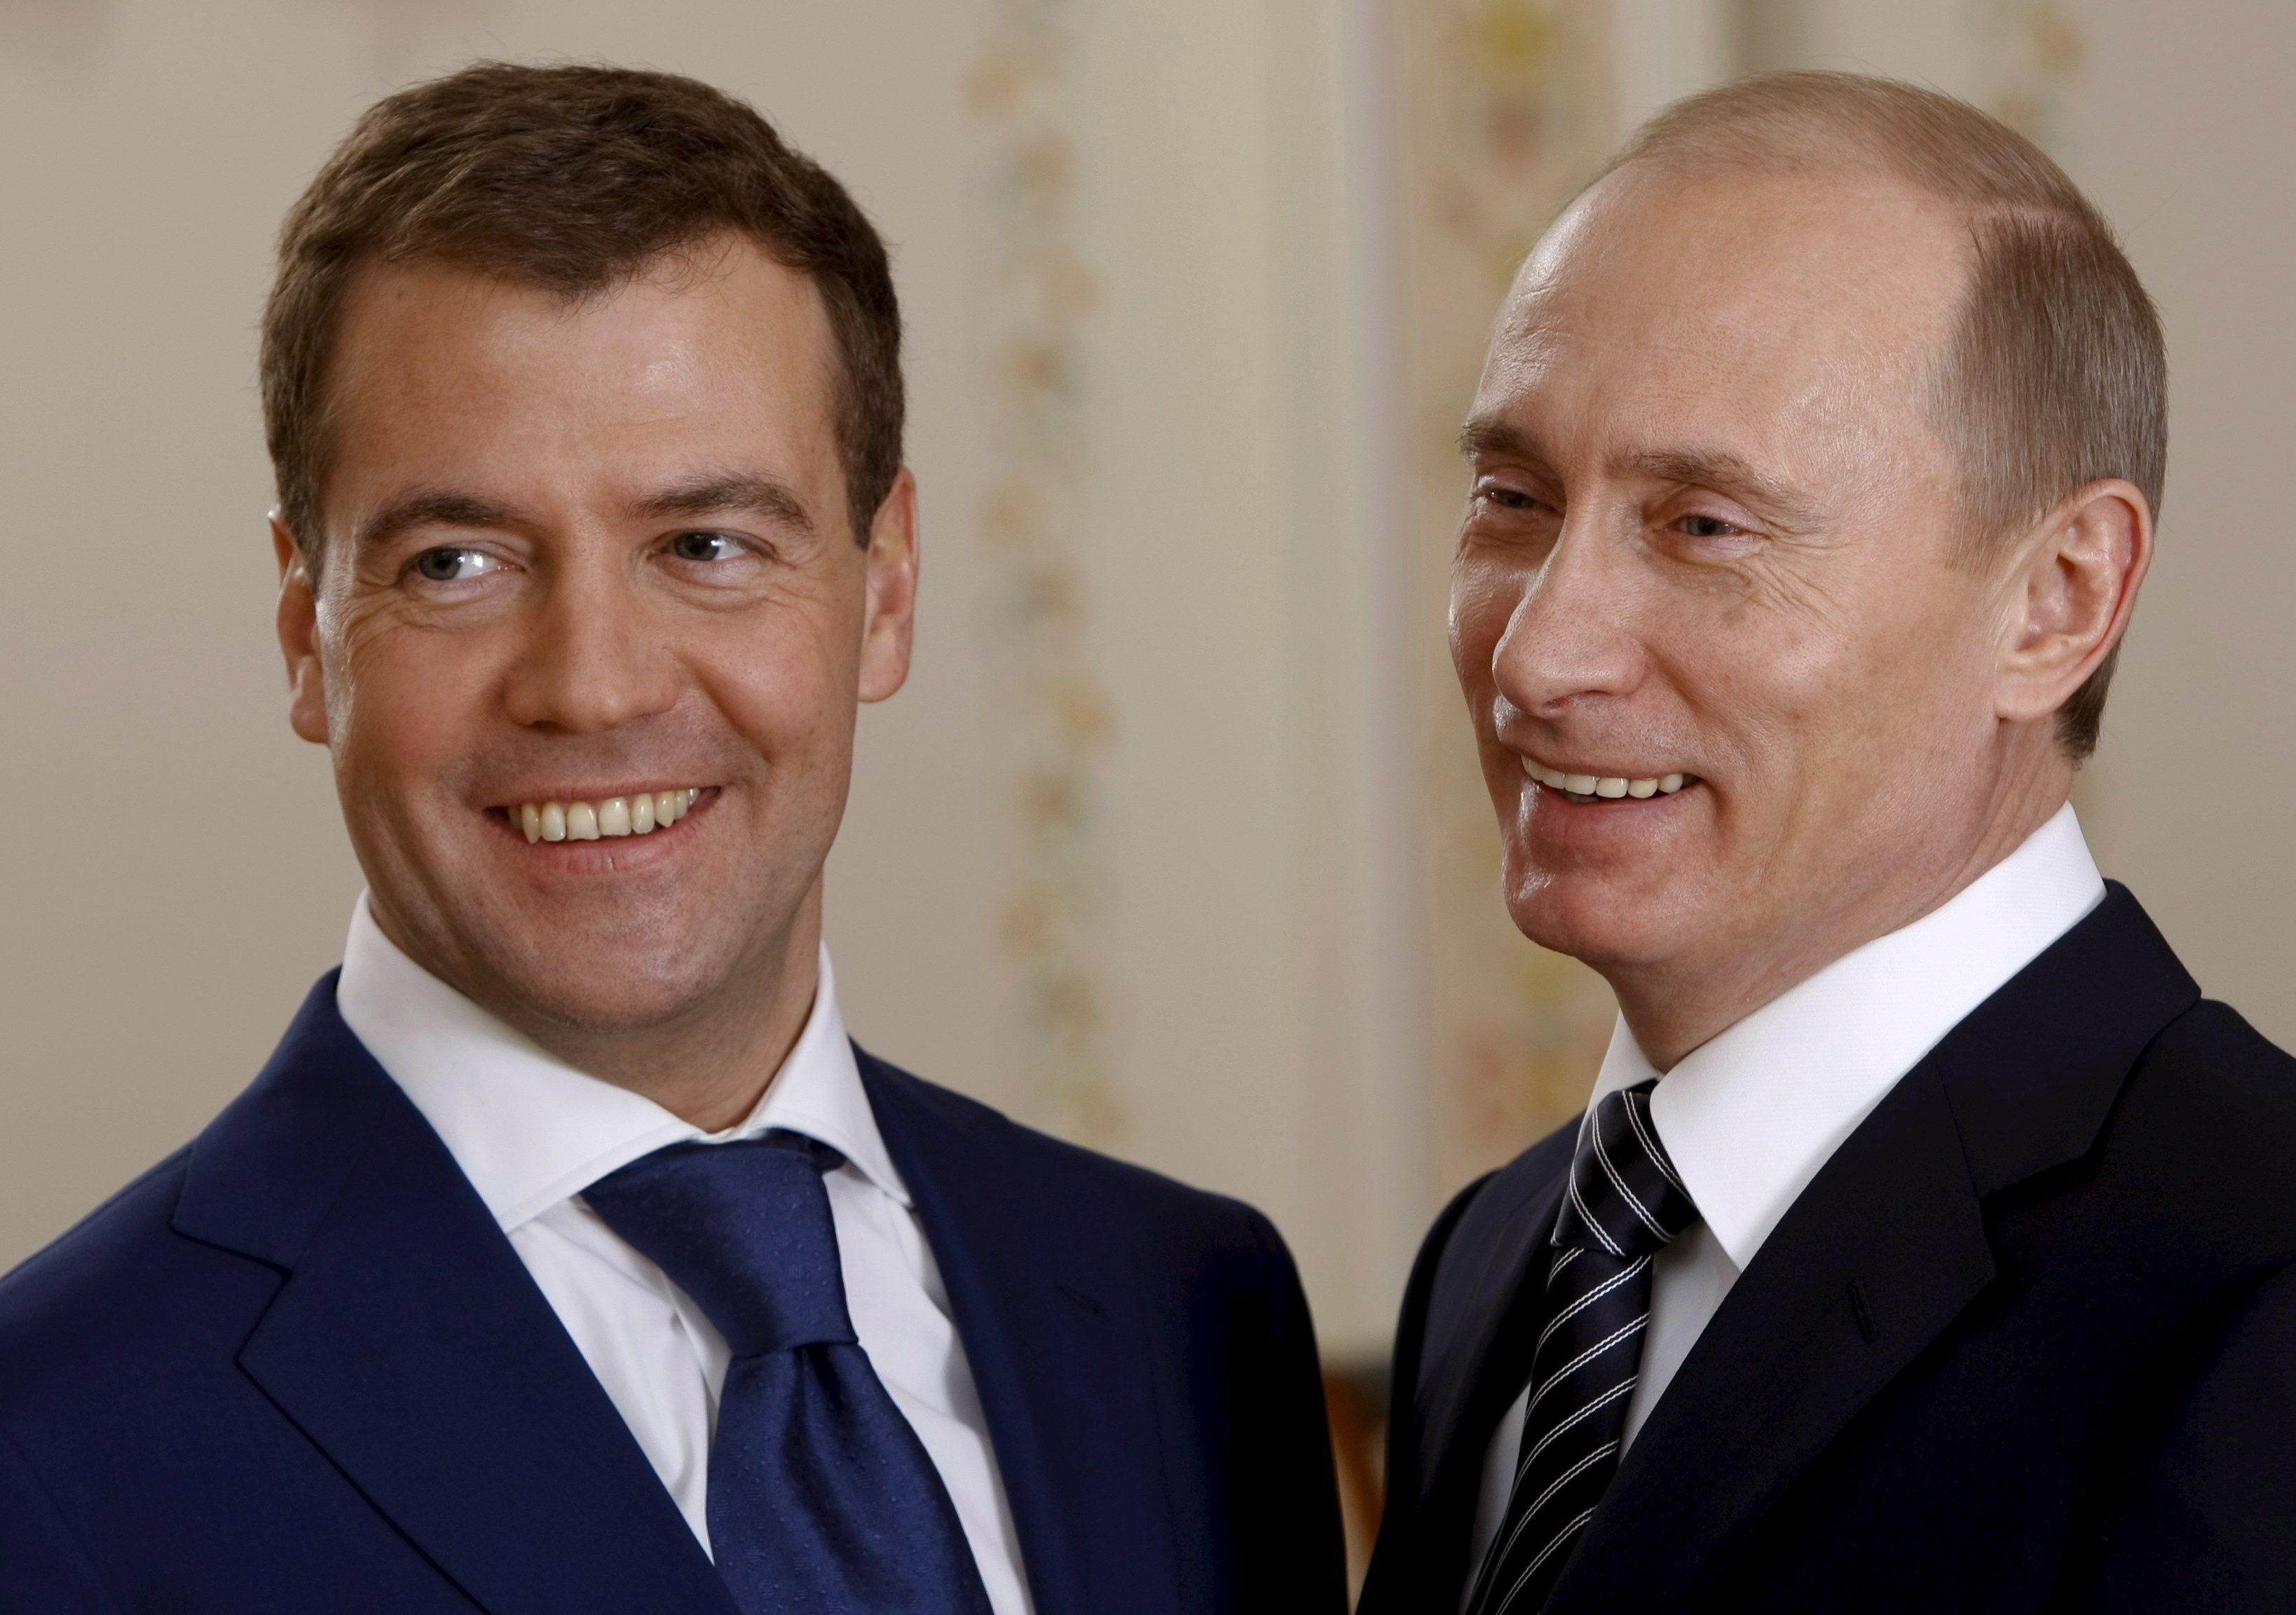 Μεντβέντεφ: «Για τη Ρωσία η κοινοβουλευτική δημοκρατία θα ήταν καταστροφή»